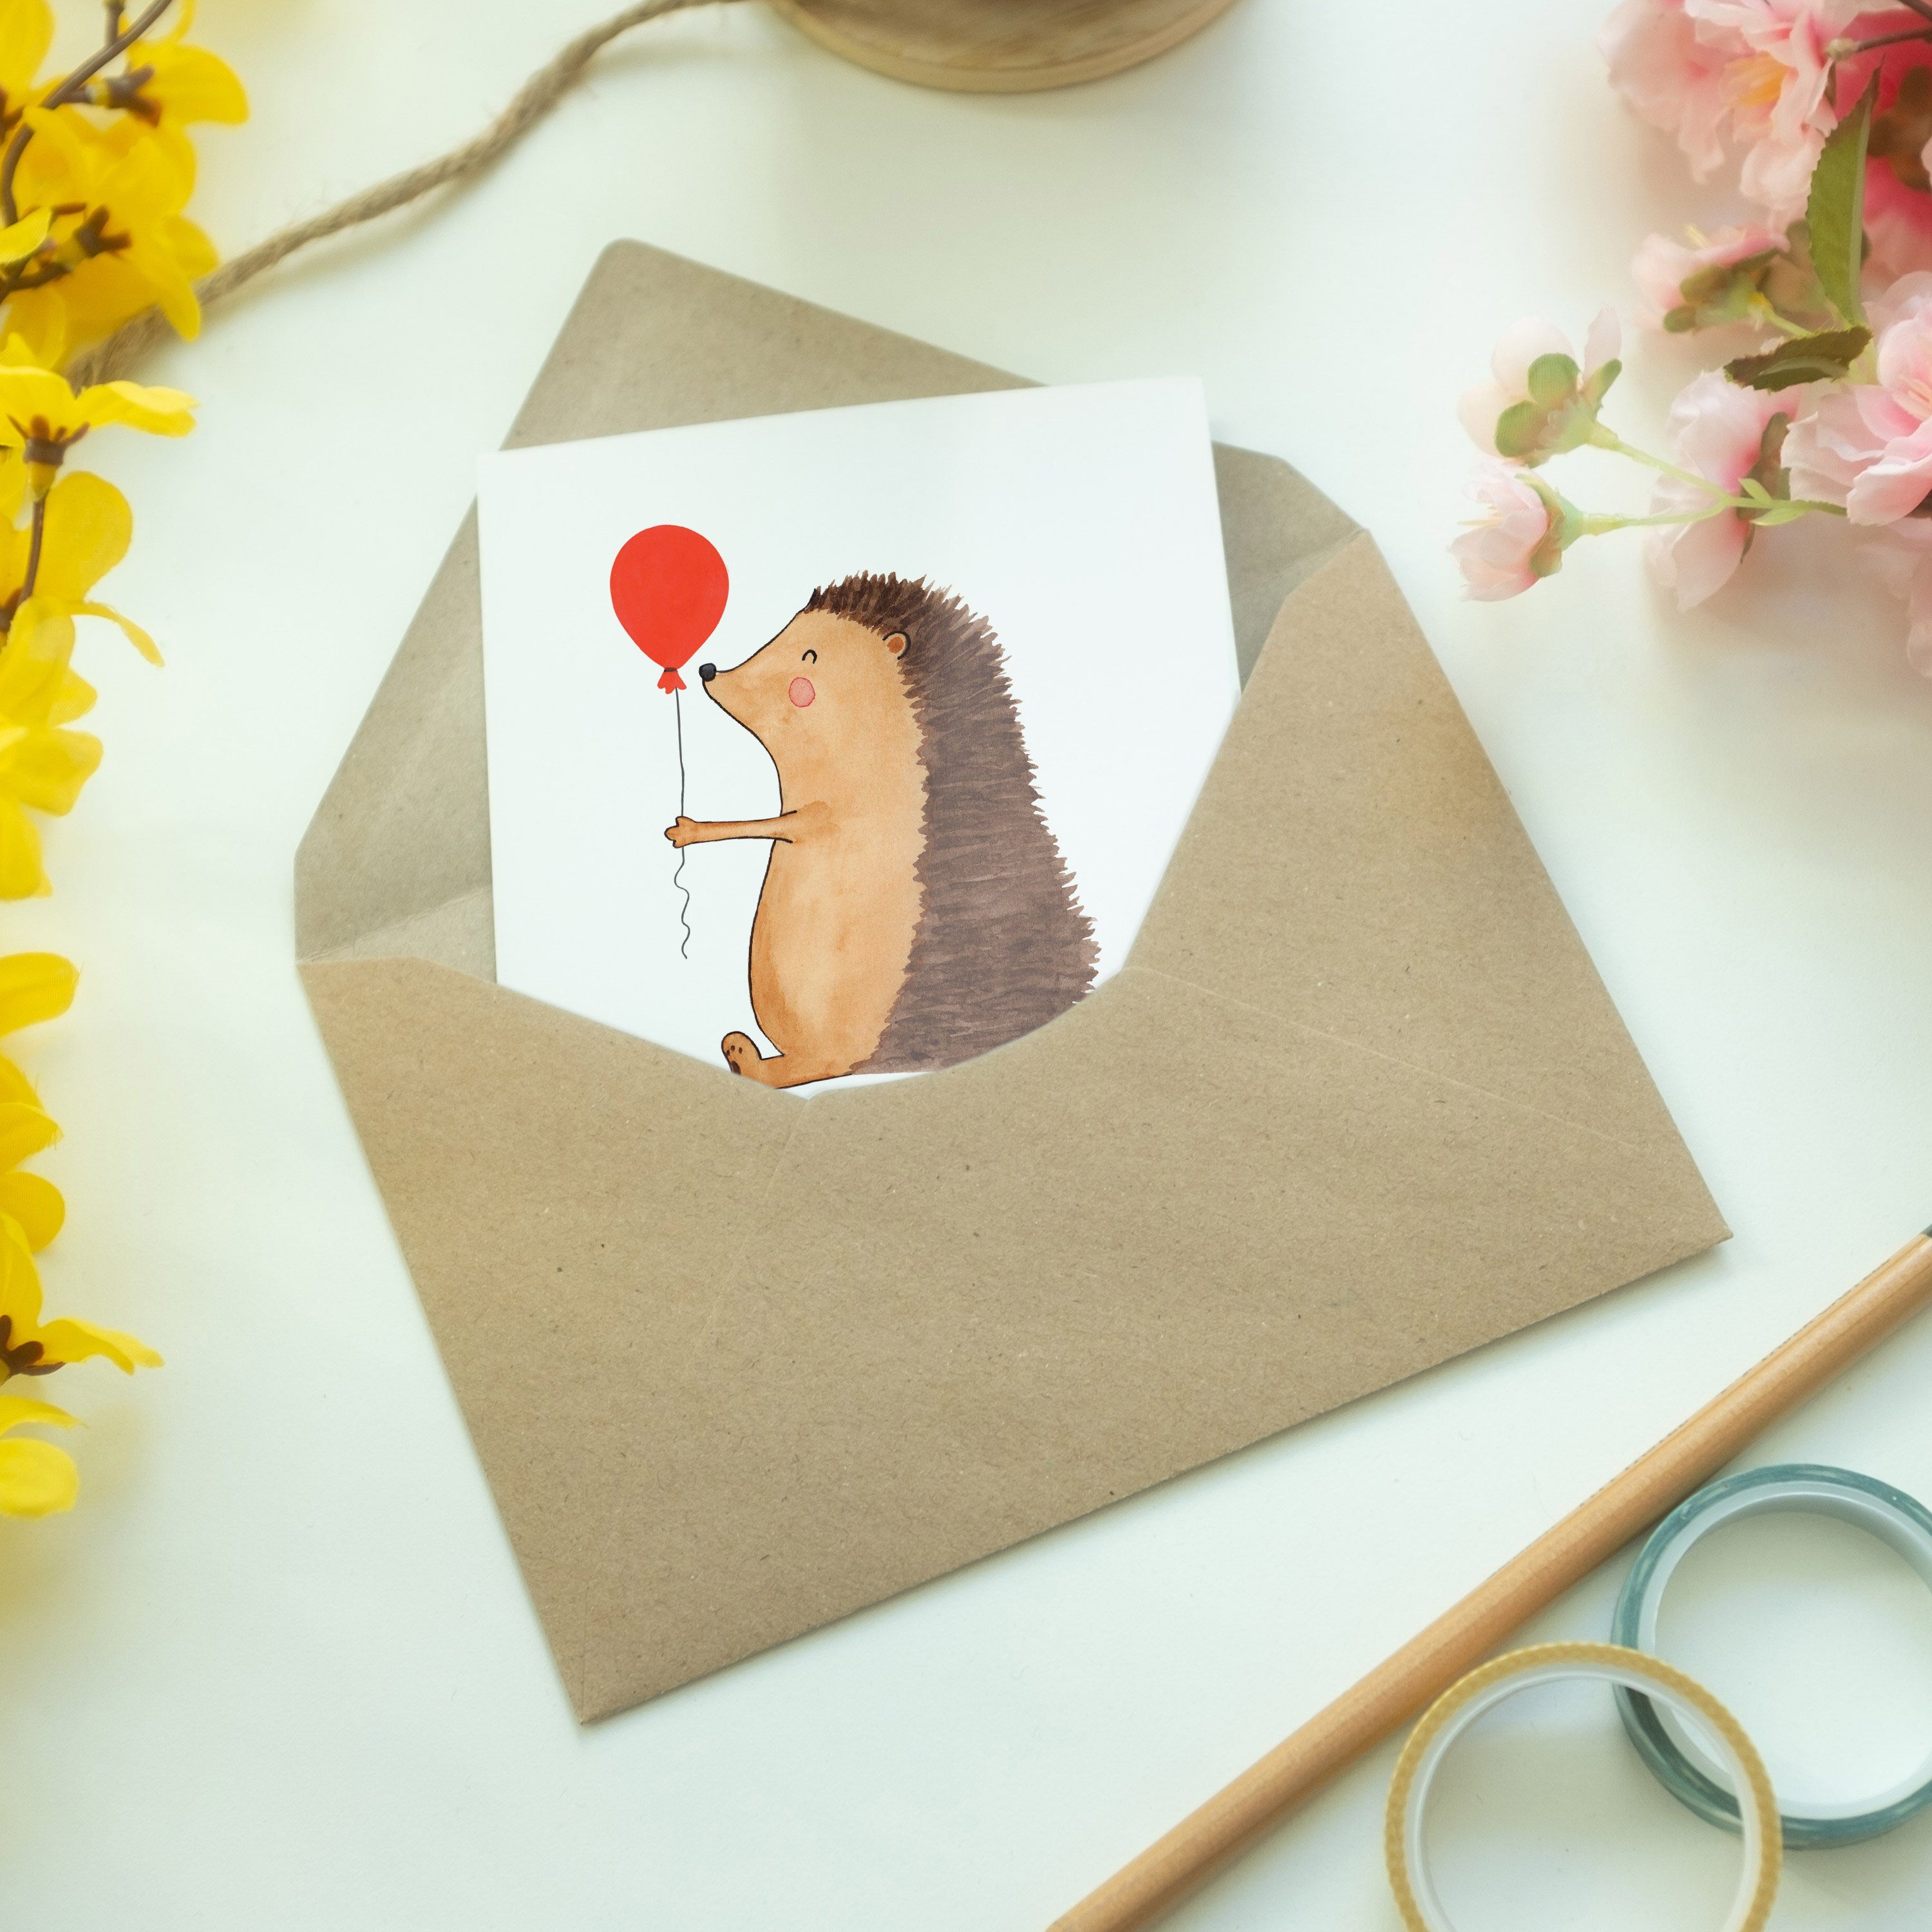 Weiß - Igel Luftballon - Mr. Gute & Glückwunschkarte Geschenk, Grußkarte Mrs. mit Panda Laune,